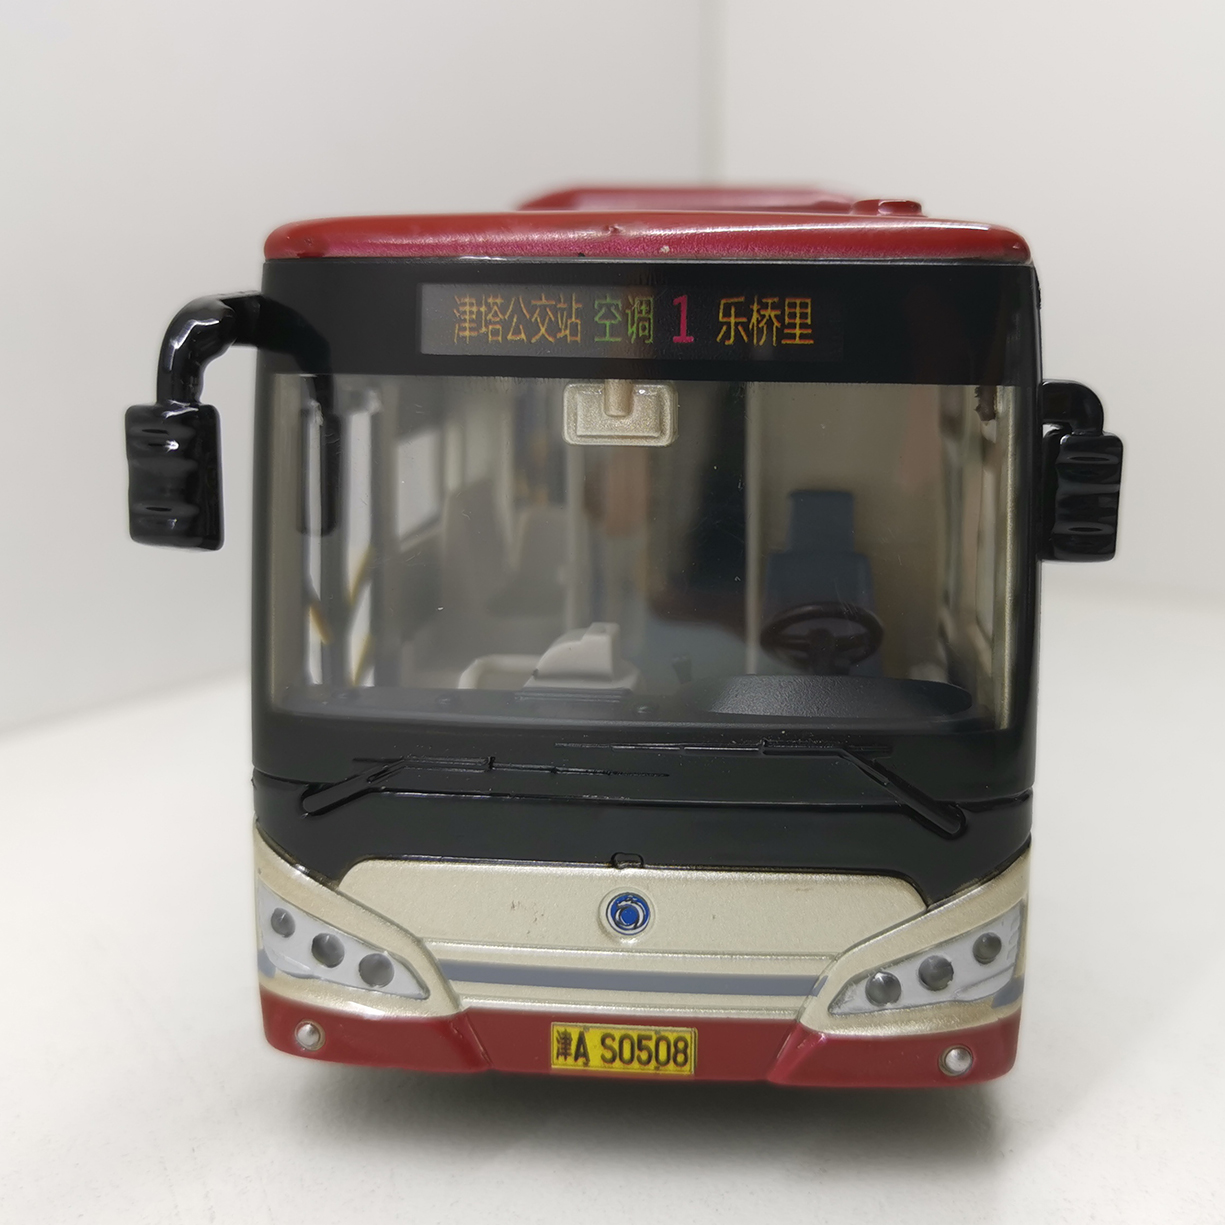 正品天津公交巴士仿真模型申龙客车合金儿童玩具车1:43多种线路可